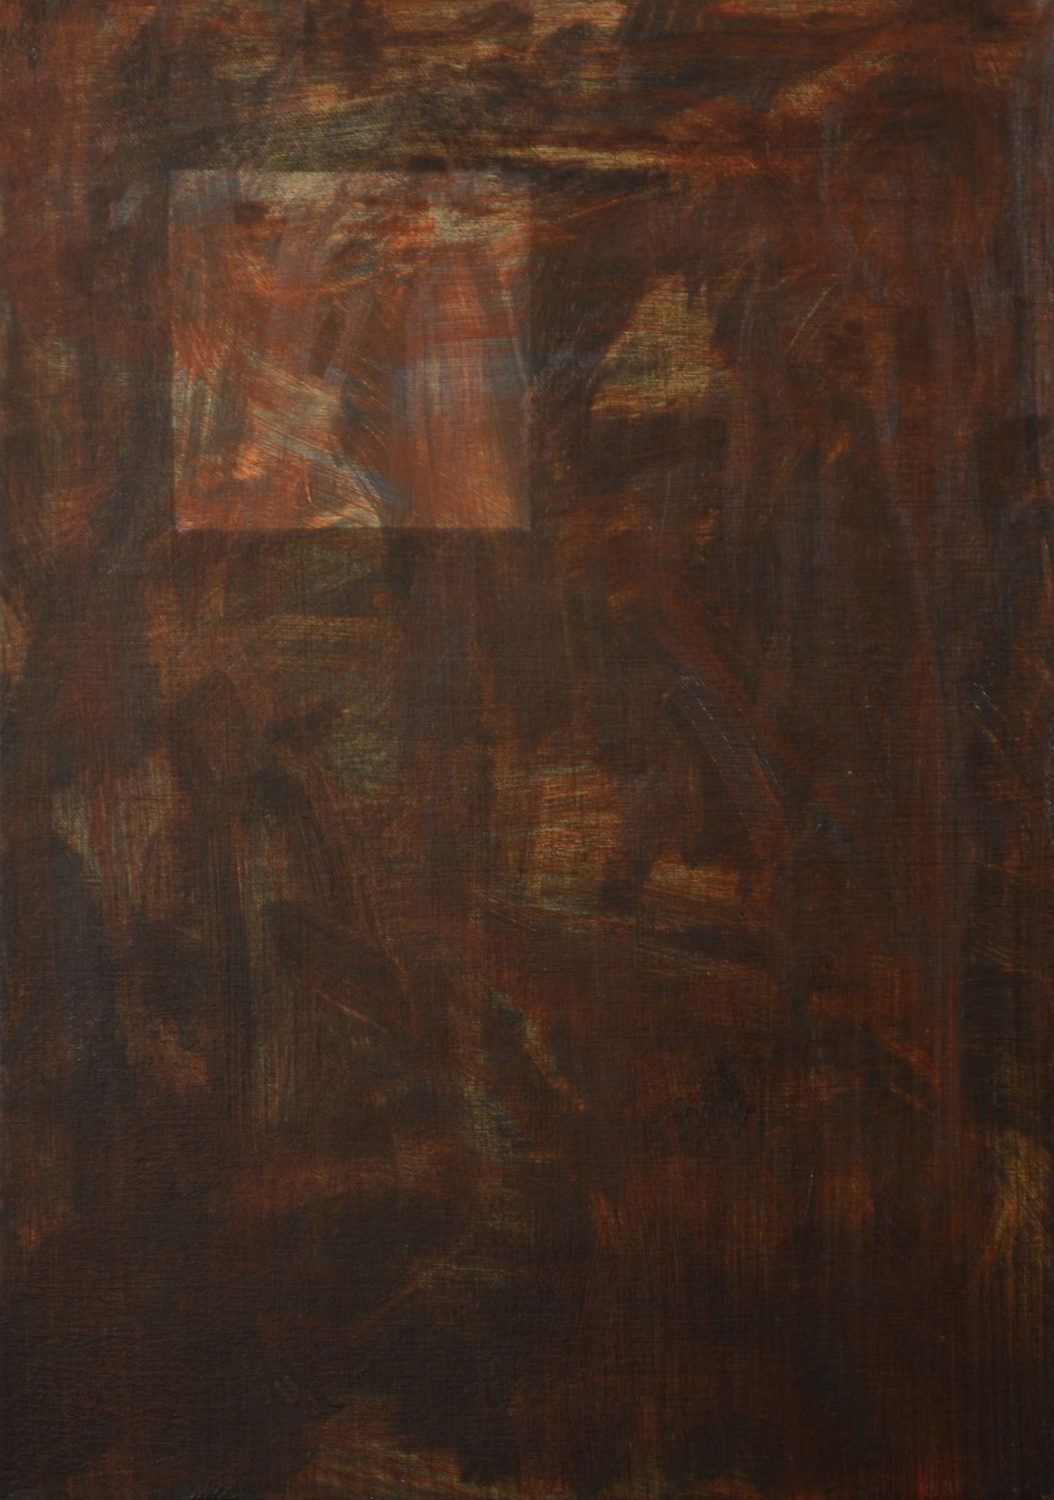 'B-320', Matthew Karl Thomas, Oil on calico, 30 x 21 cm